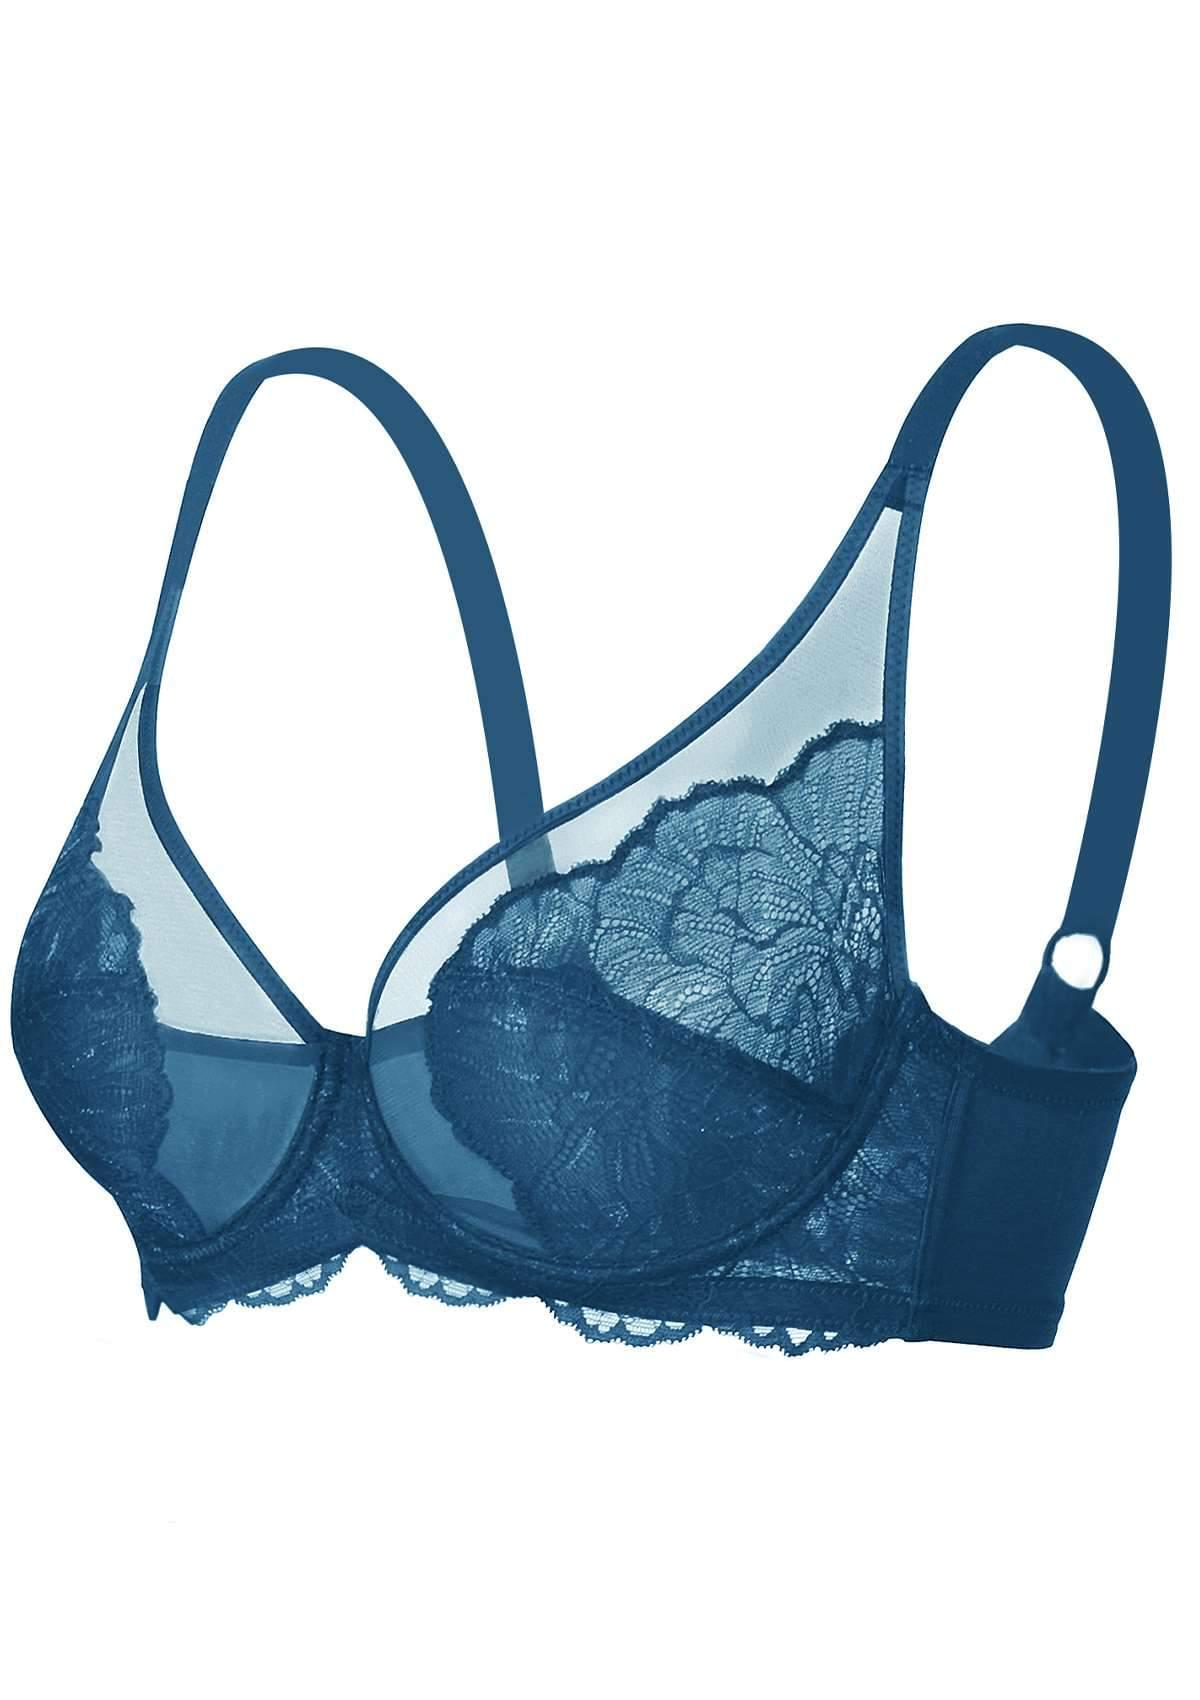 HSIA Blossom Lace Bra And Underwear Sets: Comfortable Plus Size Bra - Biscay Blue / 38 / DD/E